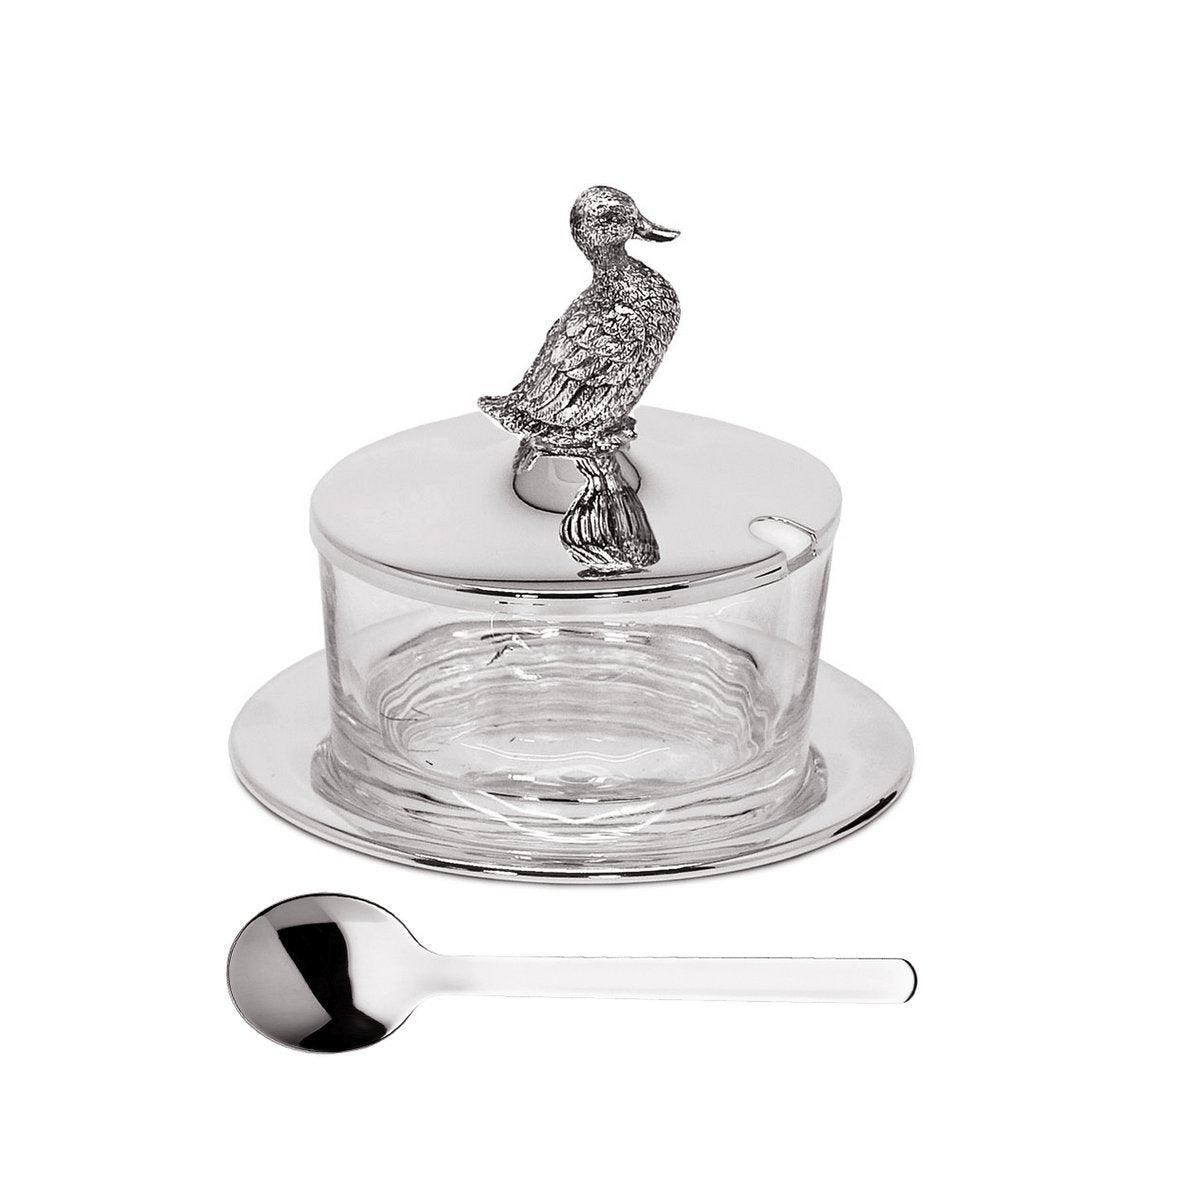 EDZARD Marmeladenglas Ente mit Untersetzer und Löffel, edel versilbert, Höhe 12 cm, ø 14 cm, ø Glas 9 cm - HomeDesign Knaus